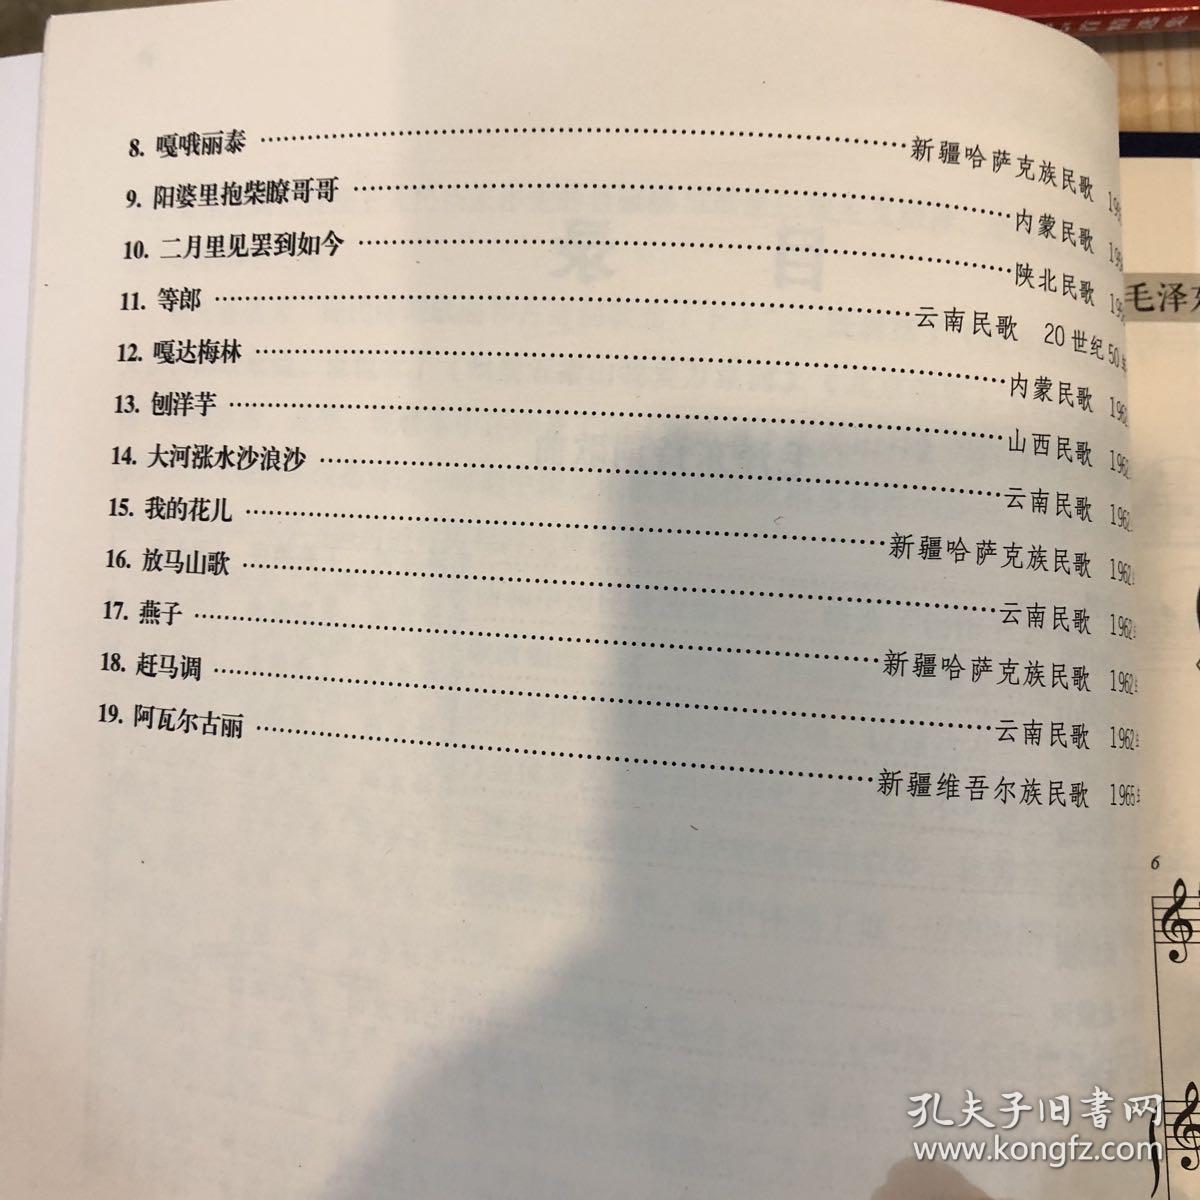 中国艺术歌曲百年曲集第六卷 高音